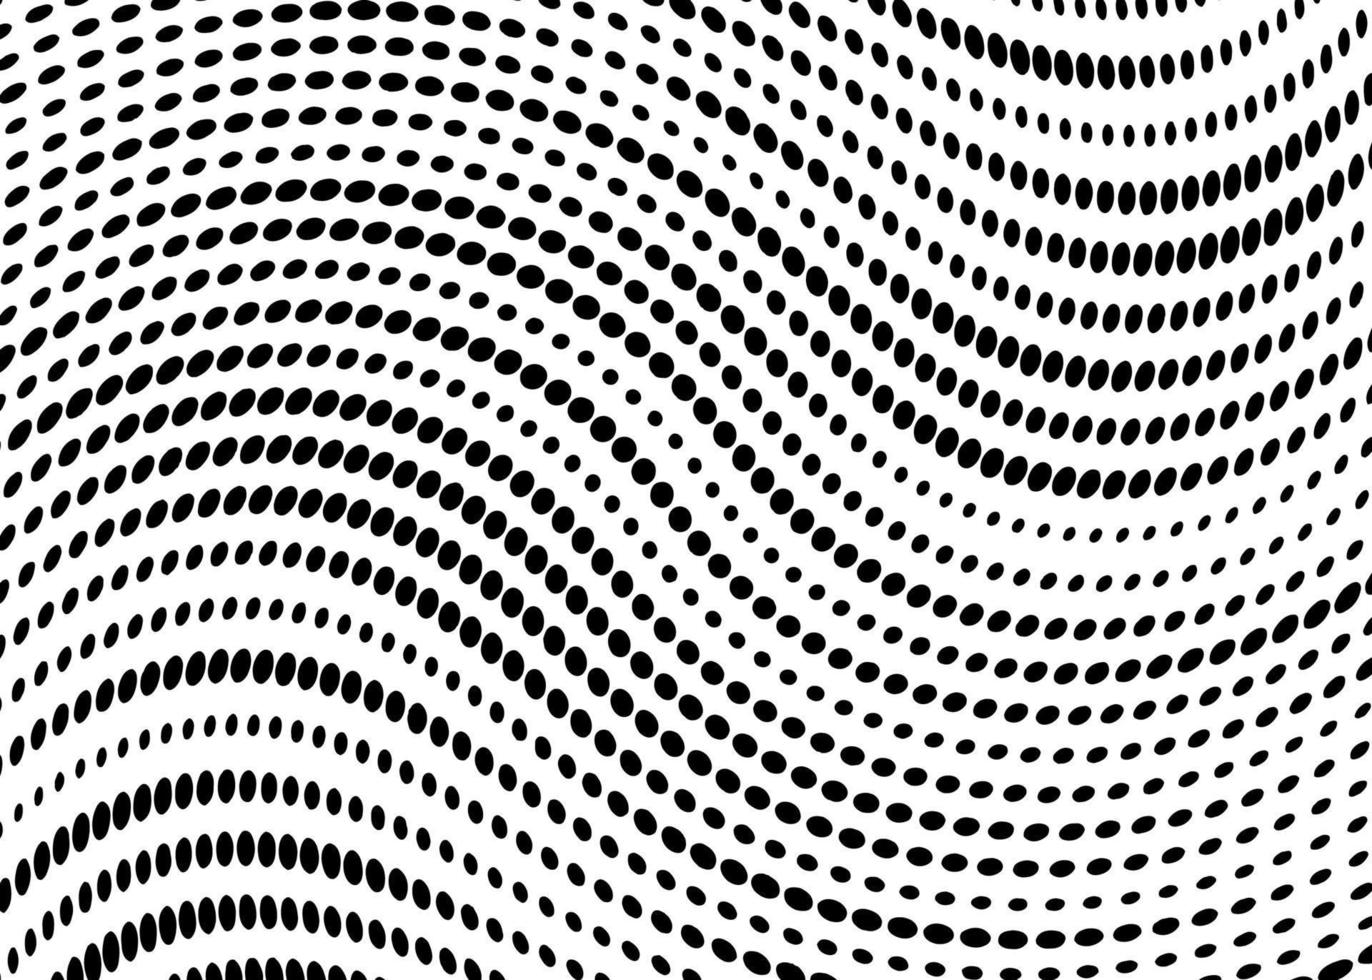 fond de motif de vague en pointillé. vague avec des lignes pointillées, dégradé de demi-teintes avec des points noirs sur fond blanc. vecteur